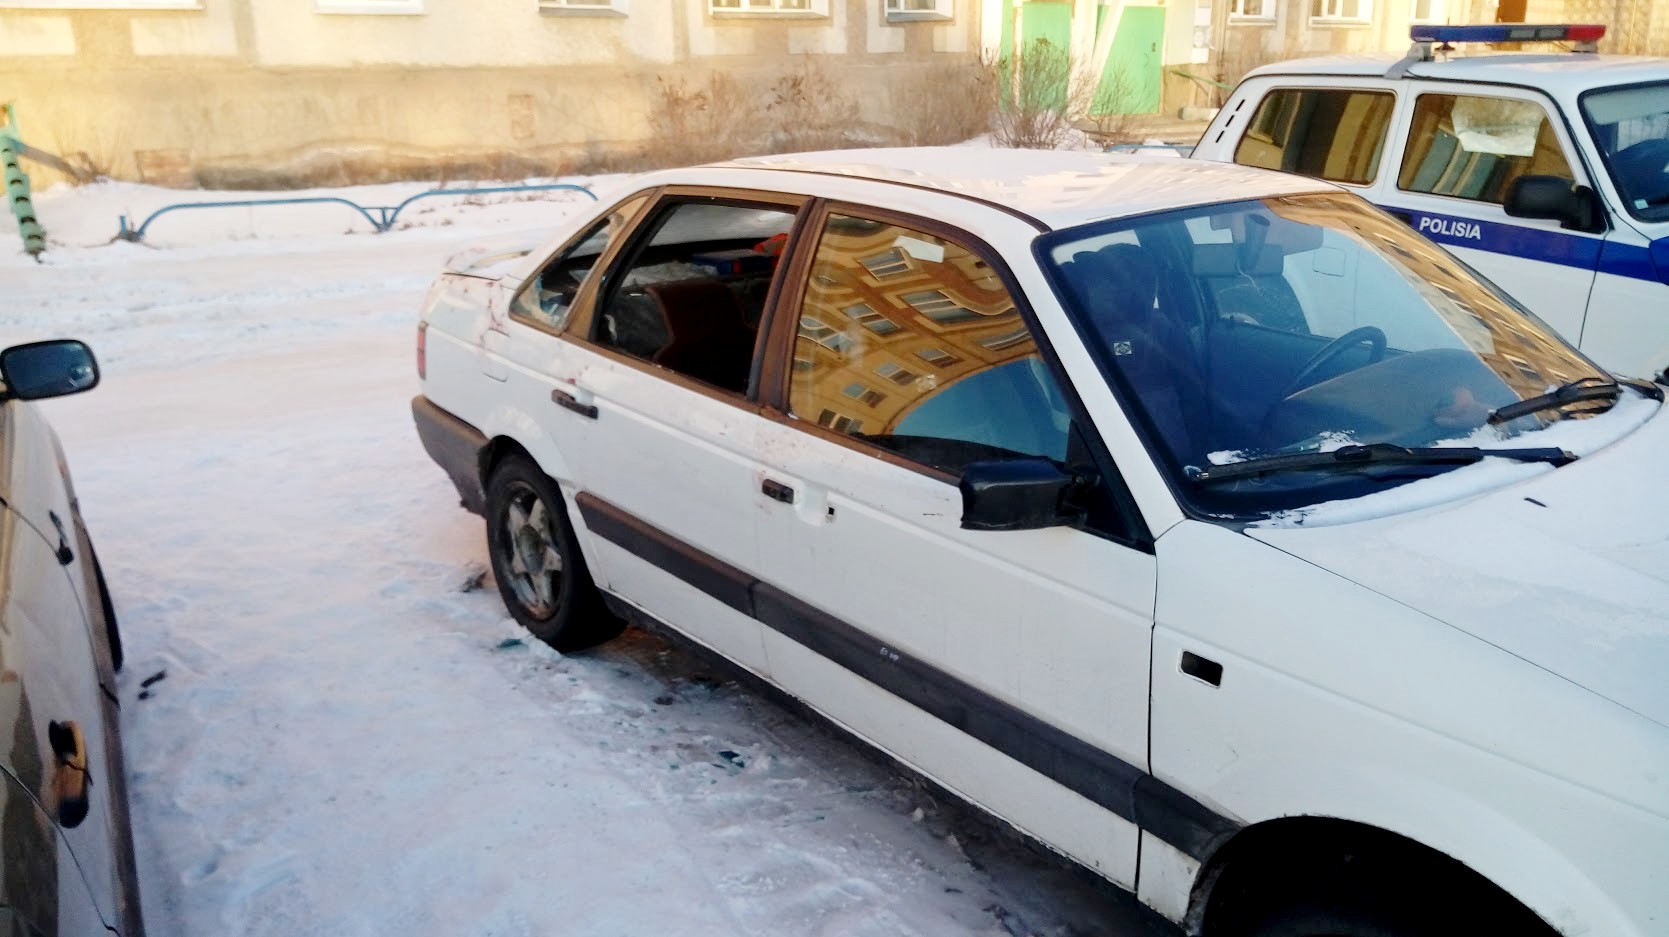 10 машин в Щучинске были вскрыты и разбиты стекла, совершены попытки угона